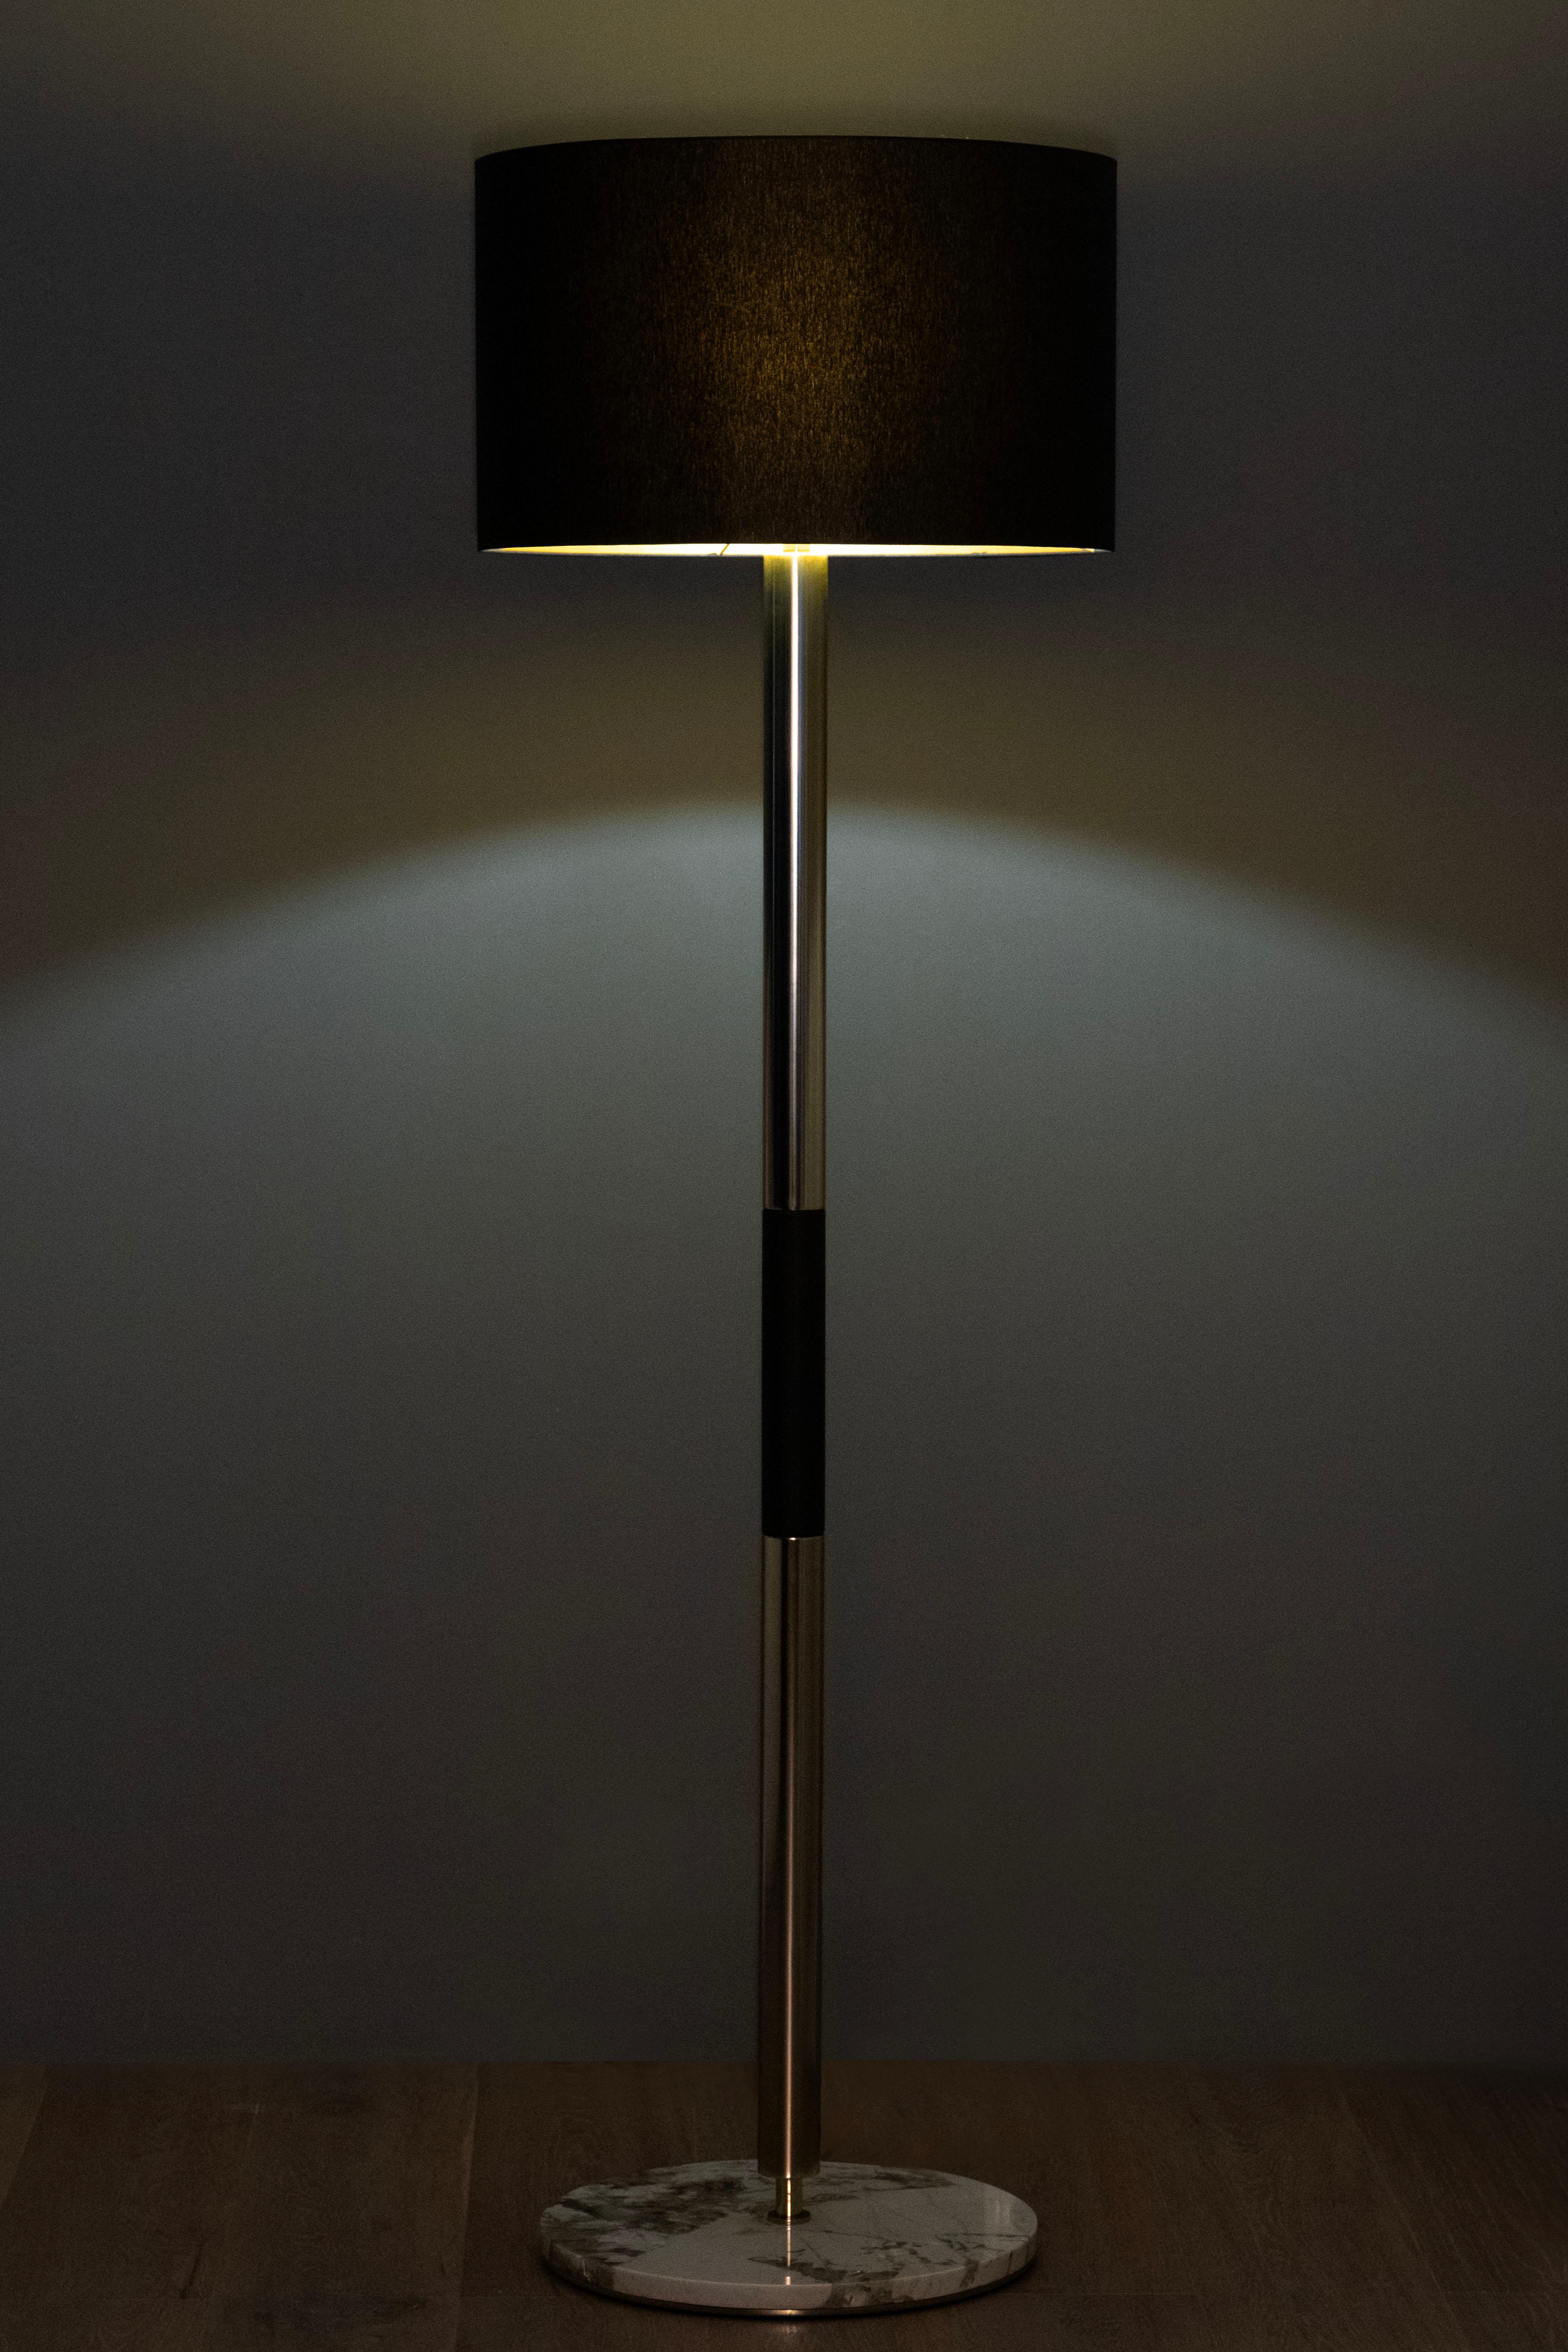 Lampadaire Gau, Collection S, fabriqué à la main au Portugal - Europe par GF Modern.

Le luxueux lampadaire Gau crée une ambiance subliminale pour une vie extraordinaire. Le détail de la marqueterie en cuir noir s'harmonise avec le merveilleux